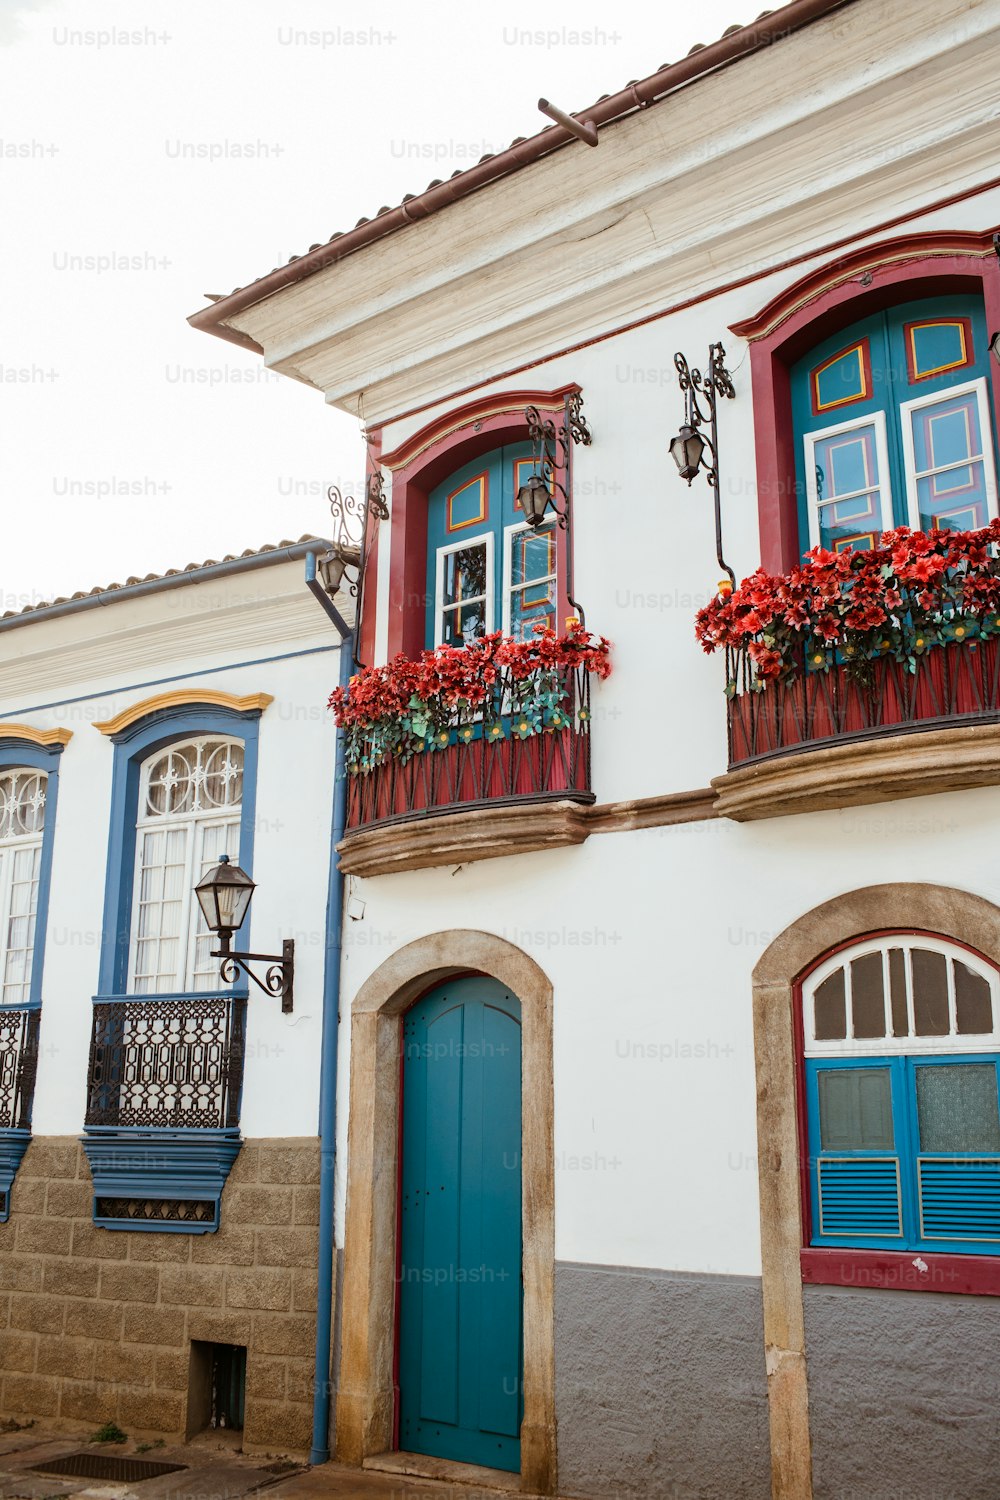 Un edificio bianco con finestre rosse e blu